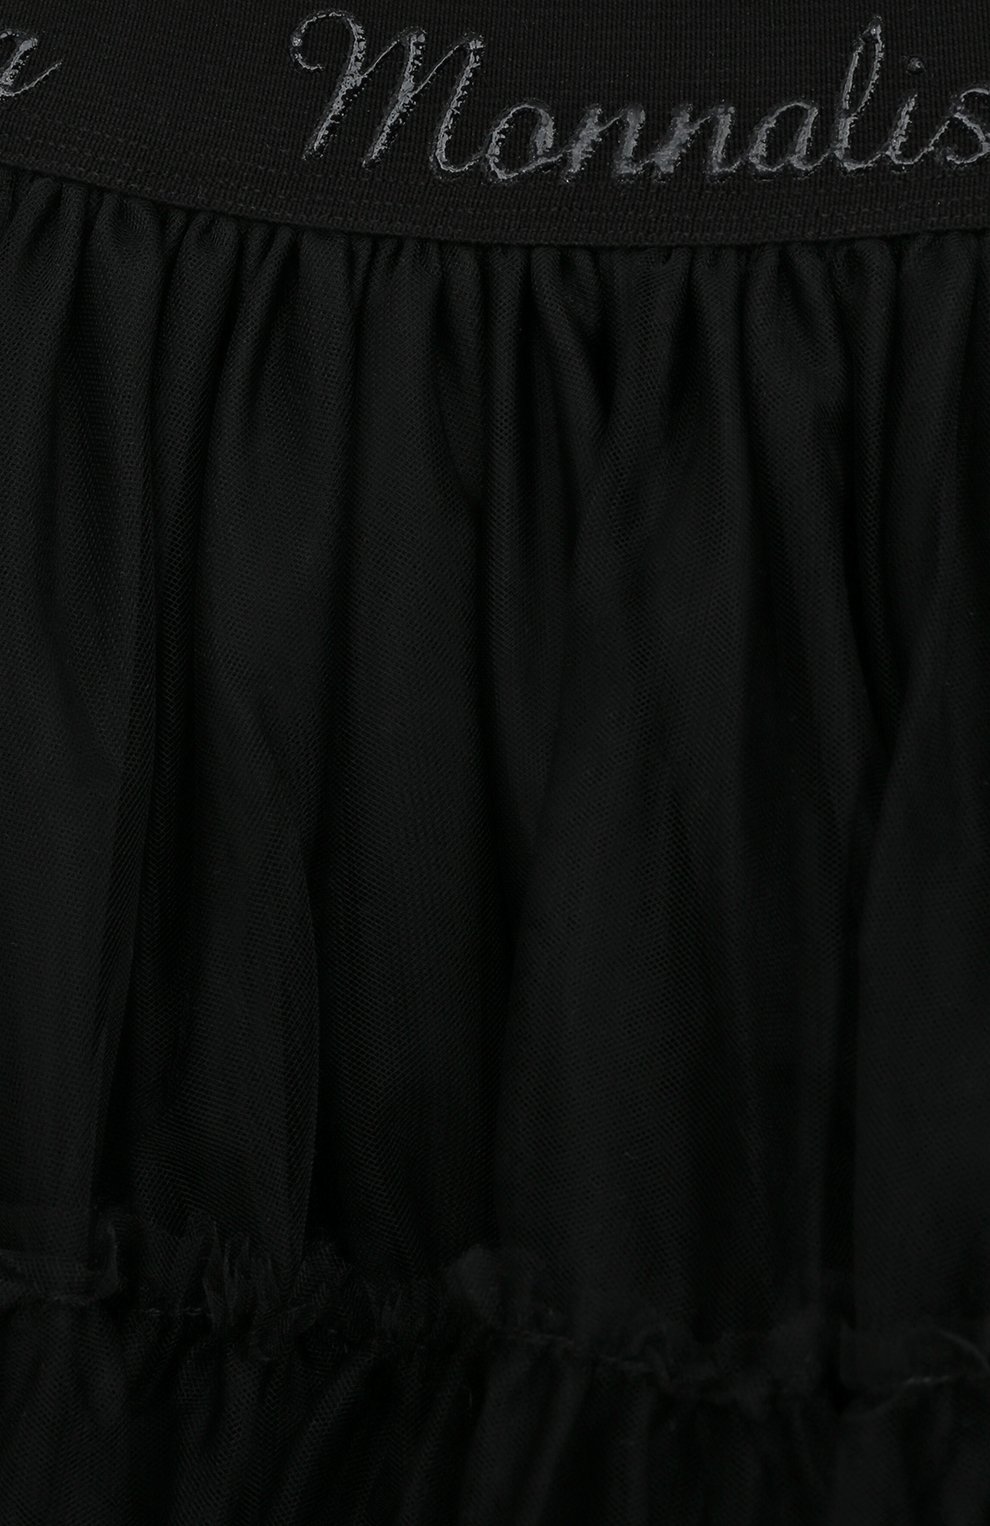 Детская юбка MONNALISA черного цвета, арт. 170GON | Фото 3 (Случай: Вечерний; Материал внешний: Синтетический материал; Материал подклада: Хлопок)